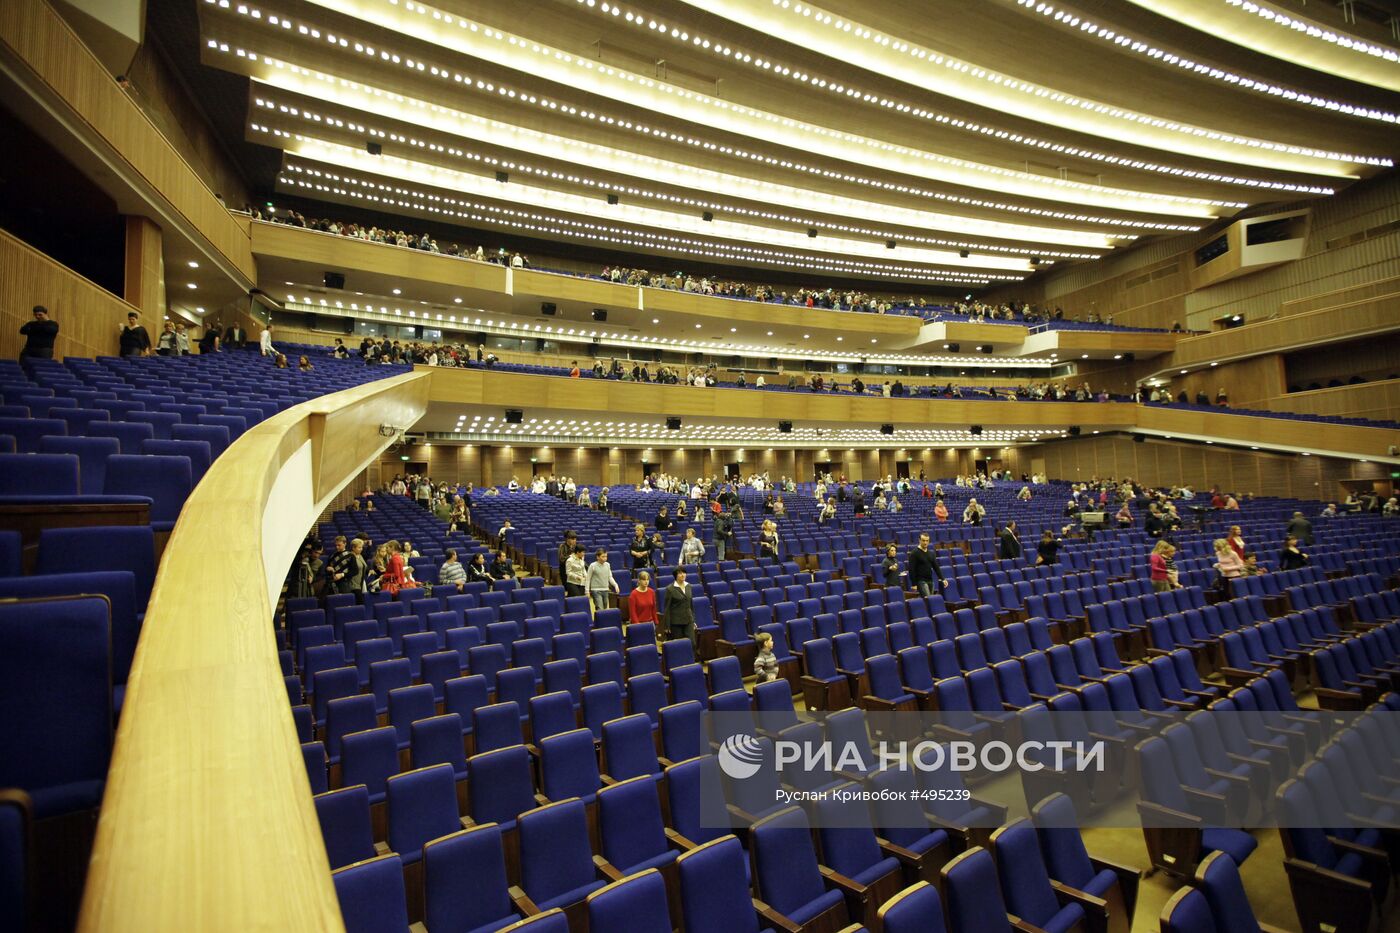 Фото кремлевского зала с местами. Кремлевский дворец амфитеатр. Государственный Кремлевский дворец зал. Концертный зал кремлевского дворца амфитеатр. Кремлевский дворец большой зал амфитеатр.